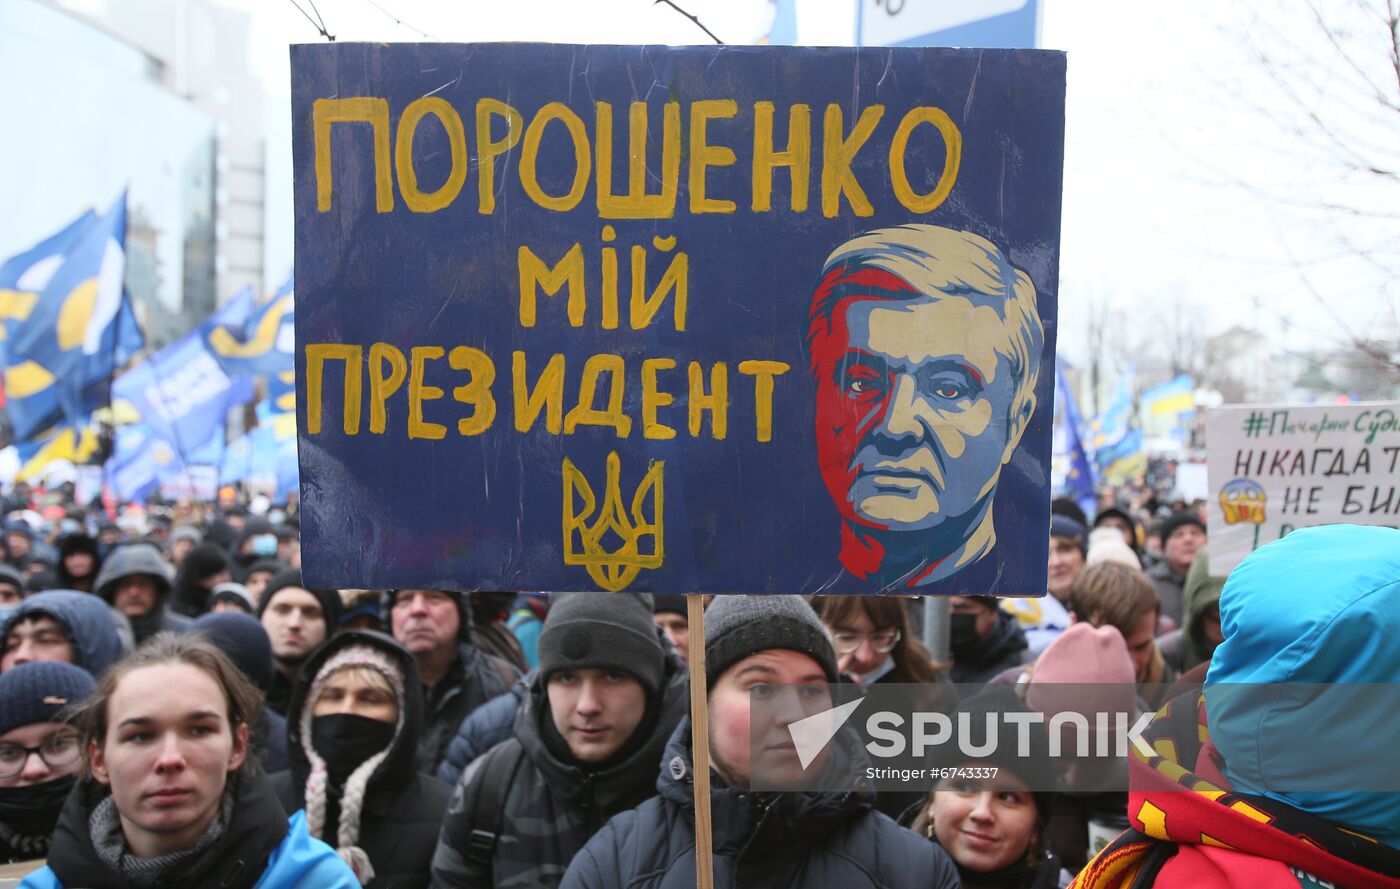 Ukraine Poroshenko Treason Trial 